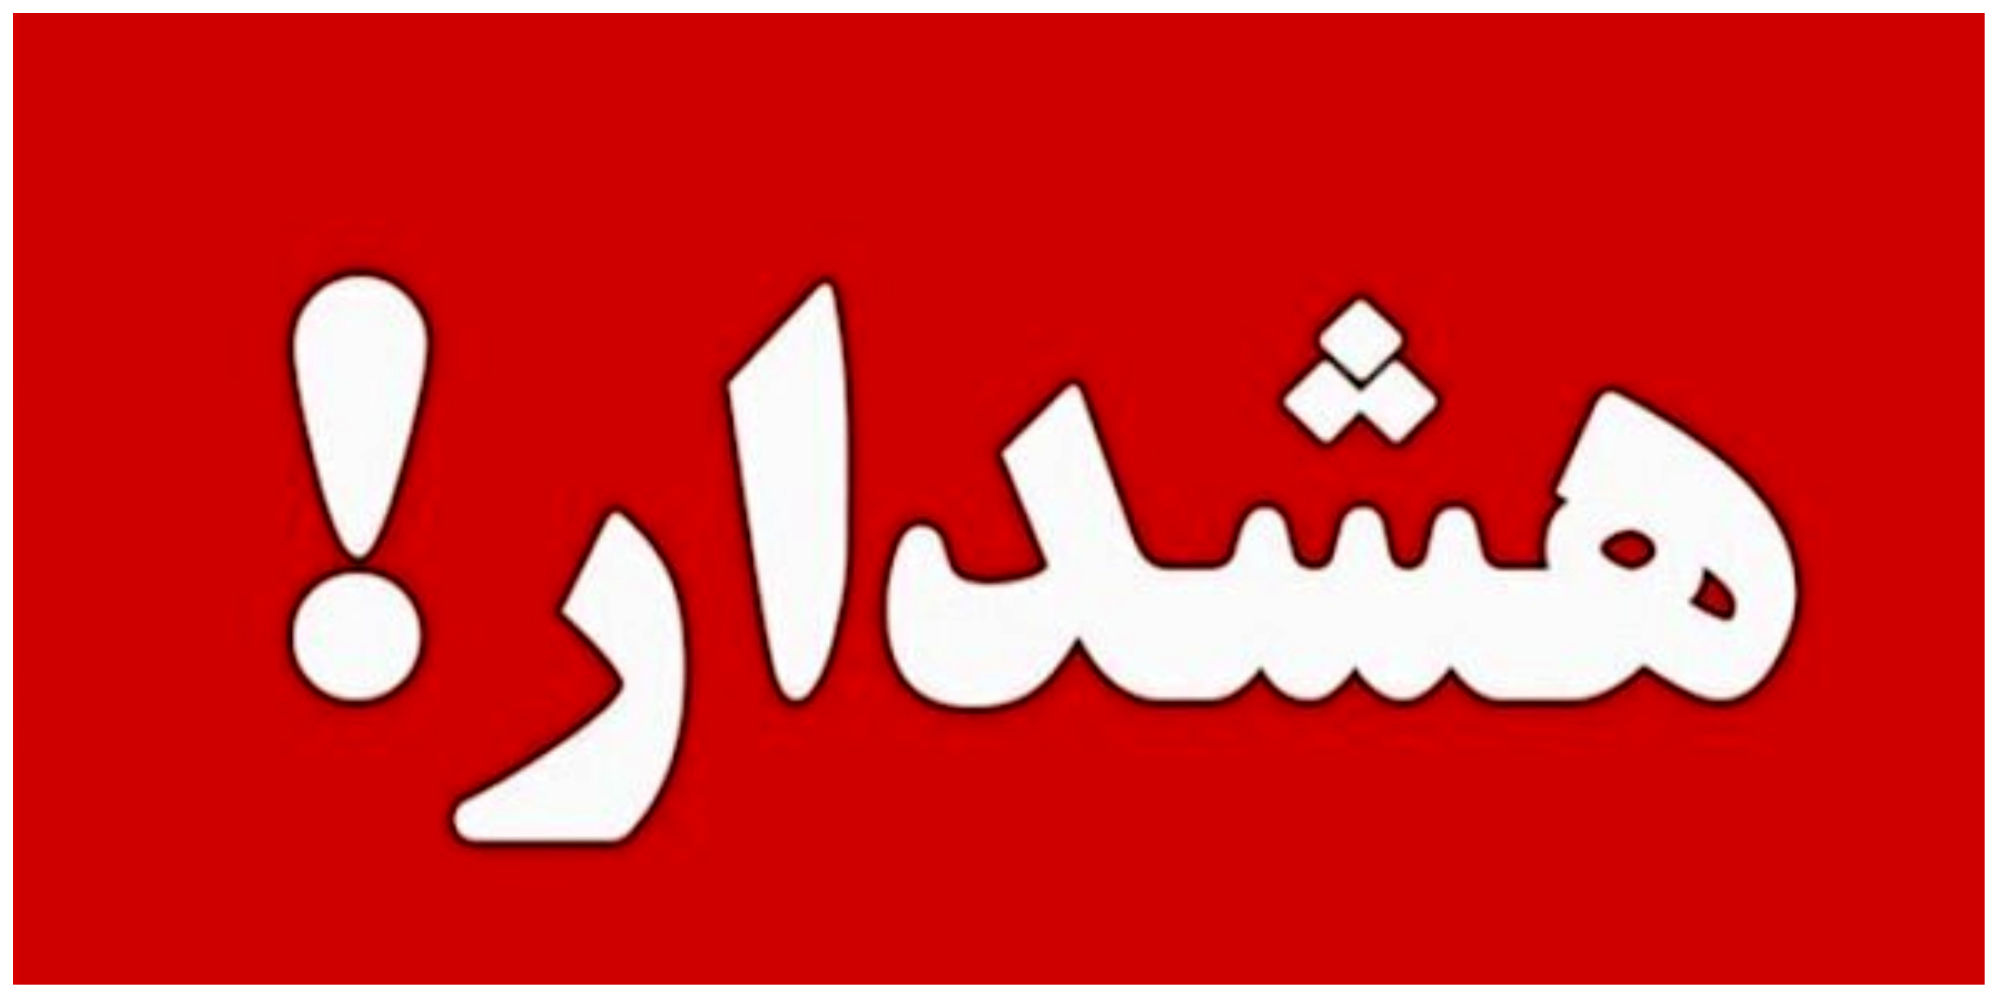 11 منطقه تهران در وضعیت قرمز/ مردم هشدارها را جدی بگیرند